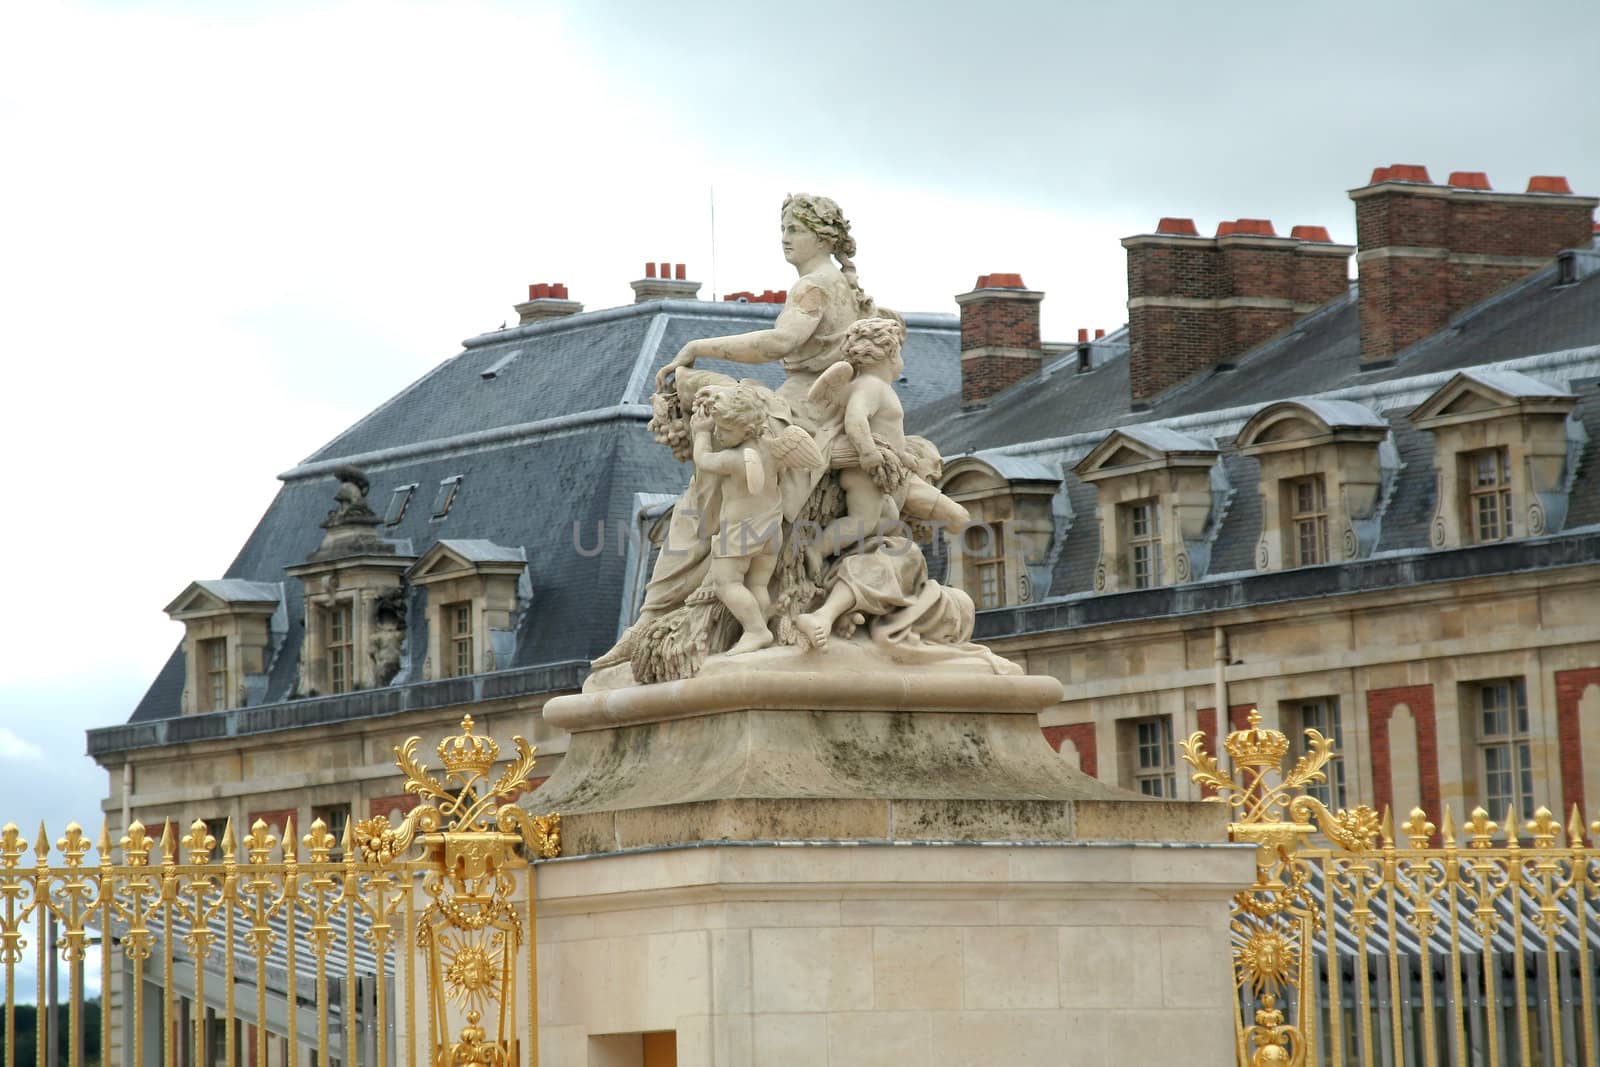 Park and Palace Chateau de Versailles. France. Facade.